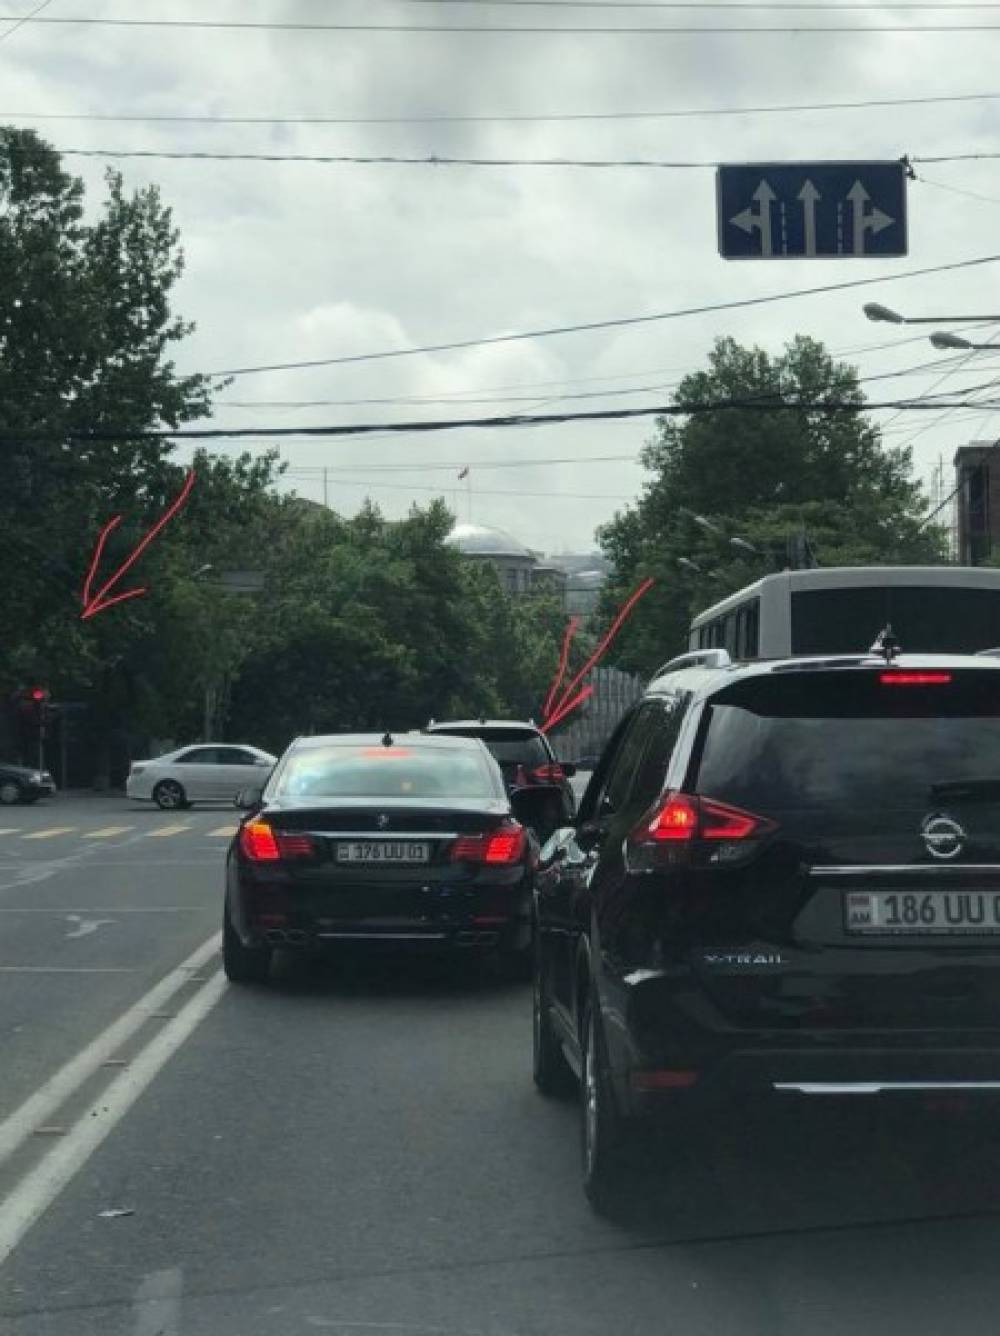 Նիկոլ Փաշինյանը կարմիր լույսի տակ կանգնում է, իսկ ԱԺ նախագահի կորտեժի, 3 ուղեկցող մեքենաների համար ՃՈ-ն ճանապարհ էր բացում. միջադեպ Երևանում